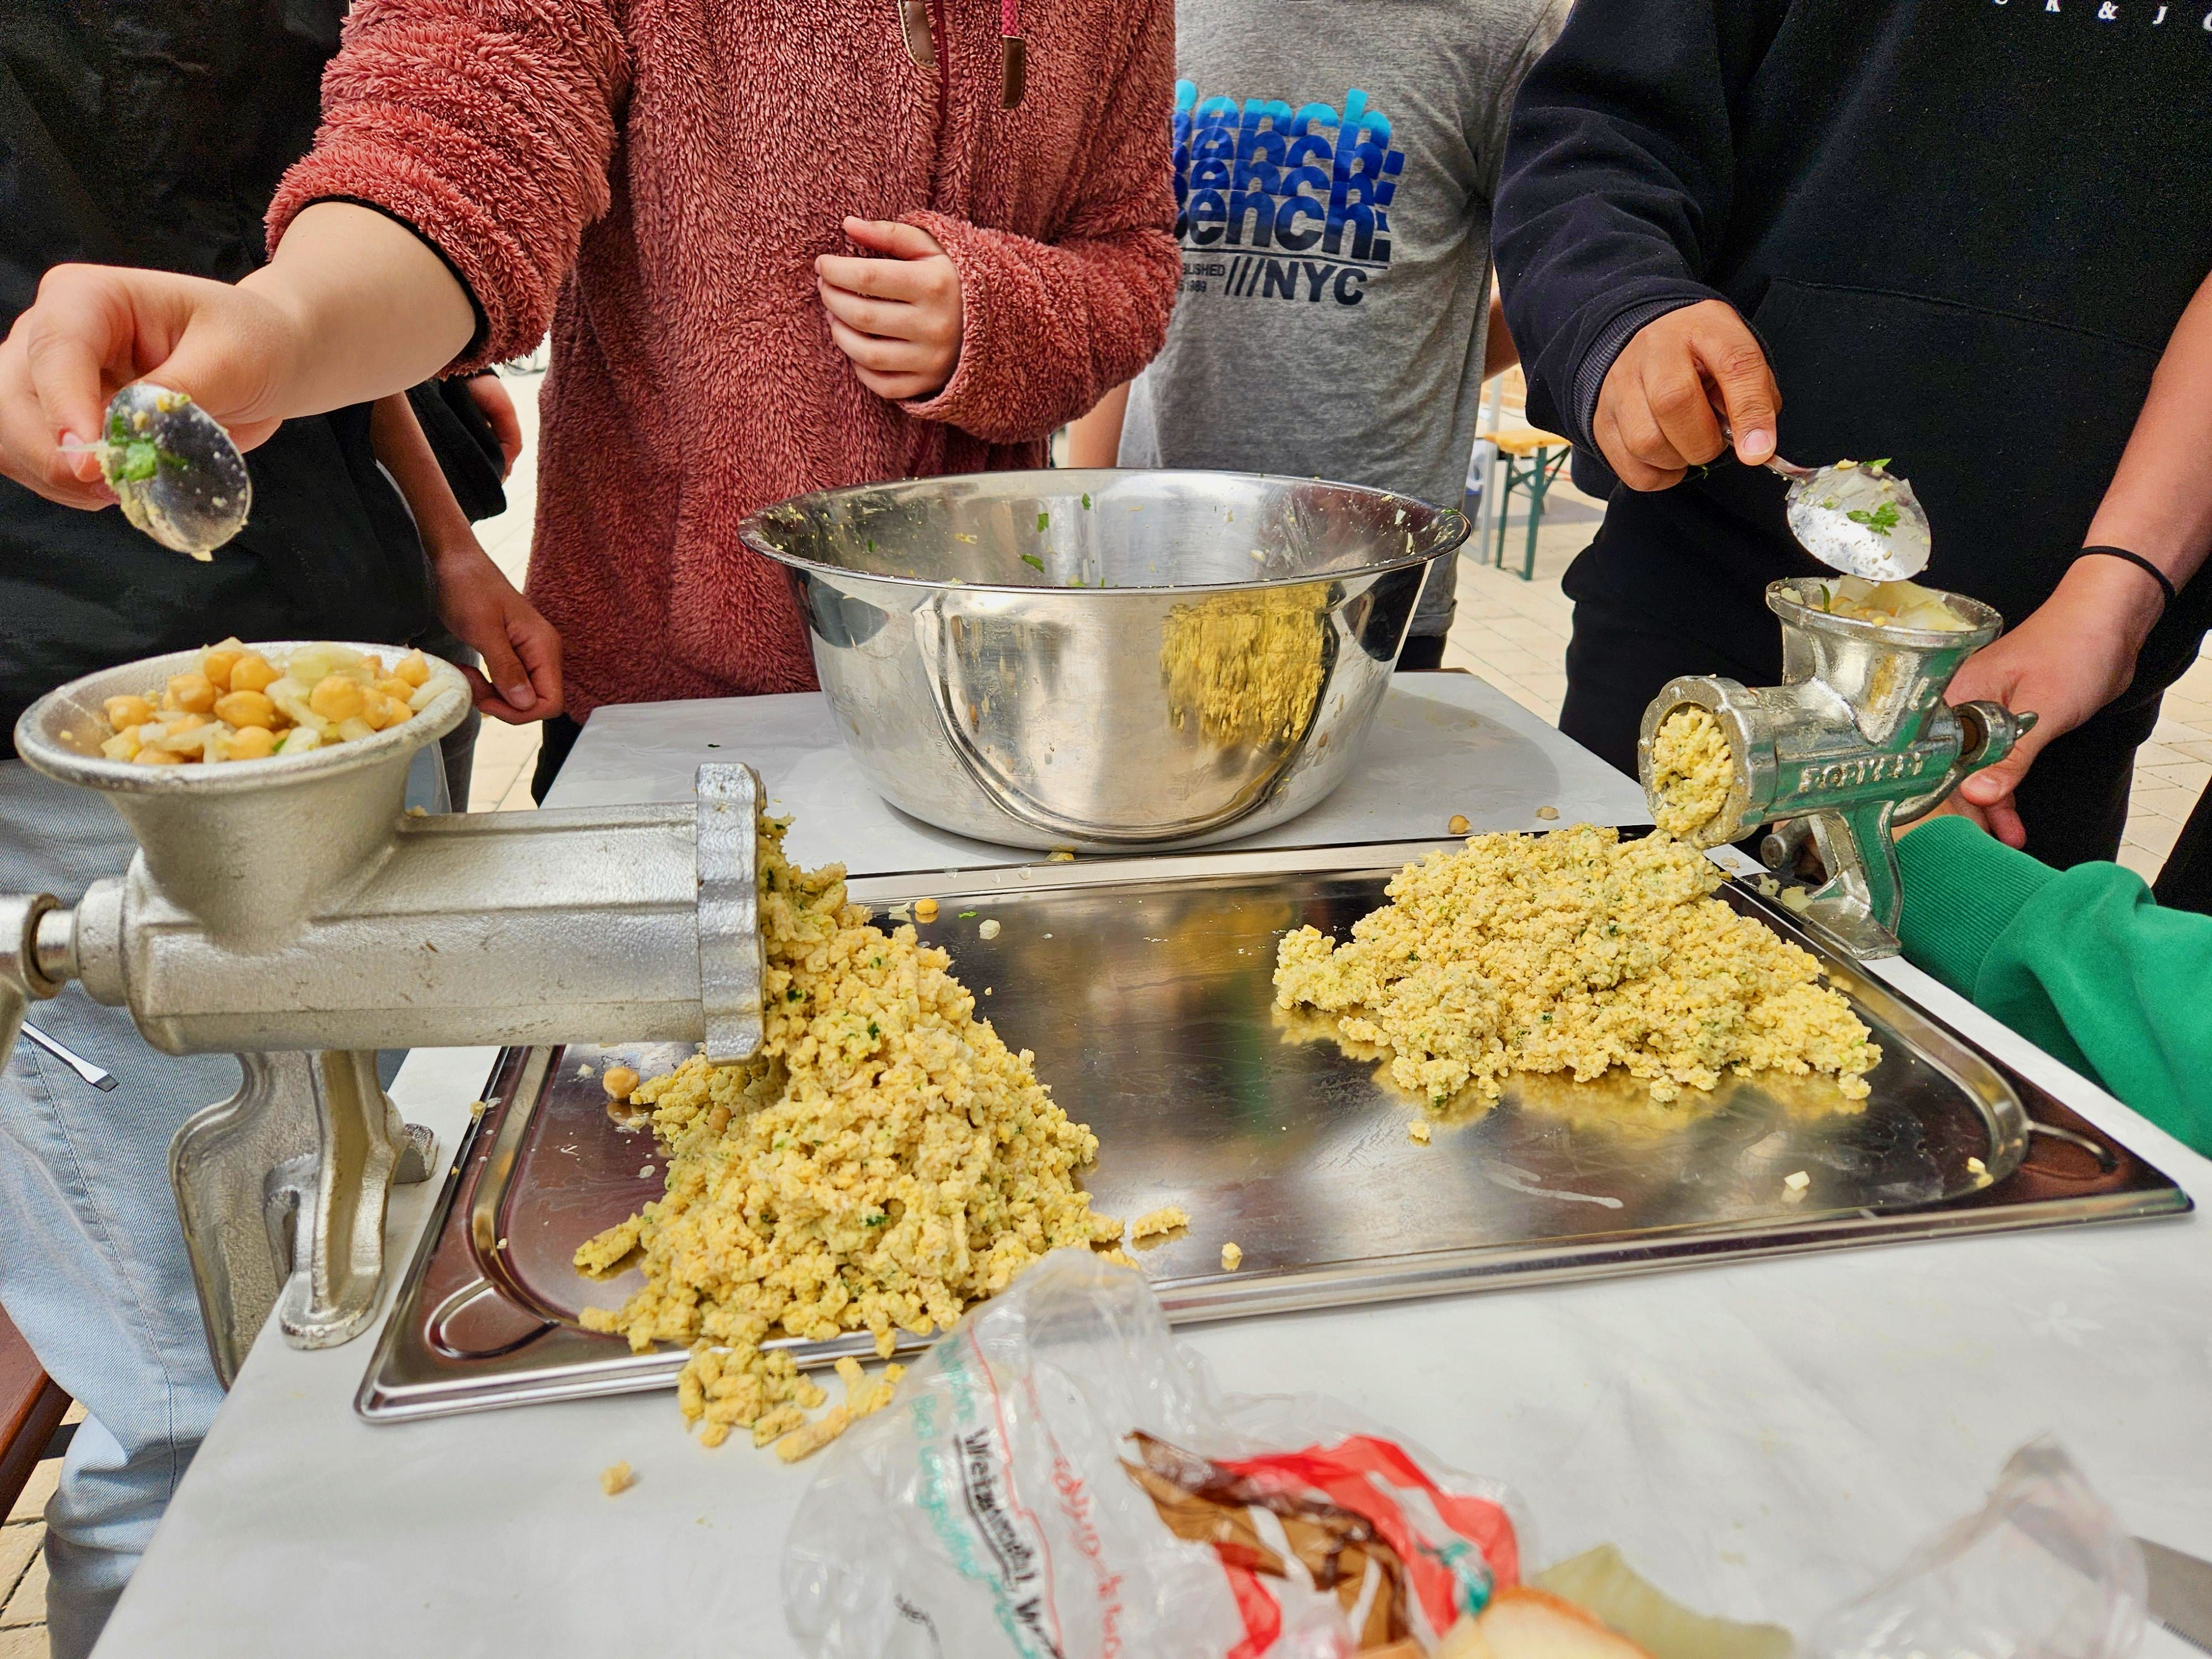 Rund um die Kichererbse: Projekt "Midnimo - Kochen verbindet!"